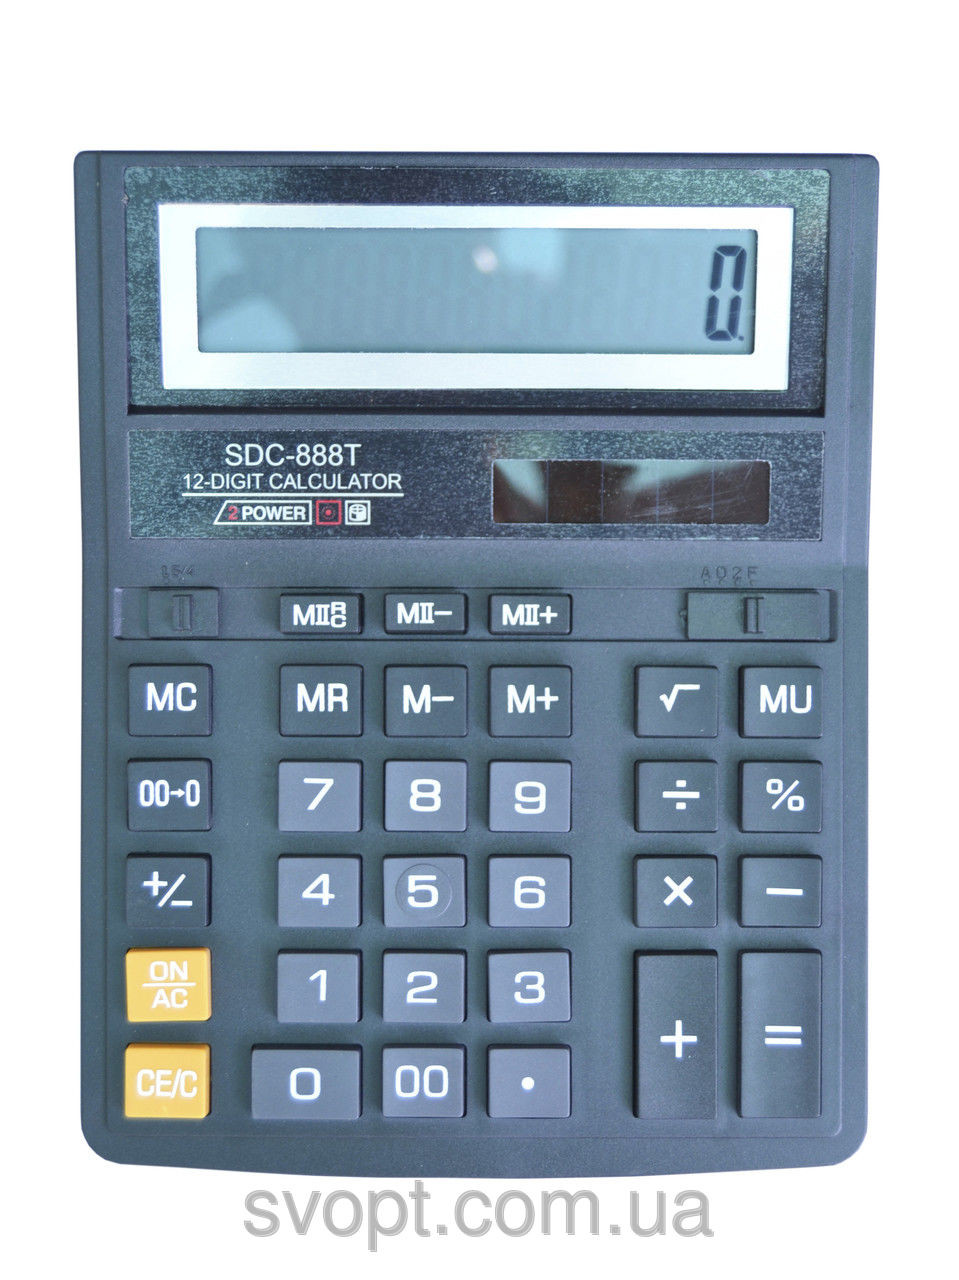 Калькулятор sdc-888t